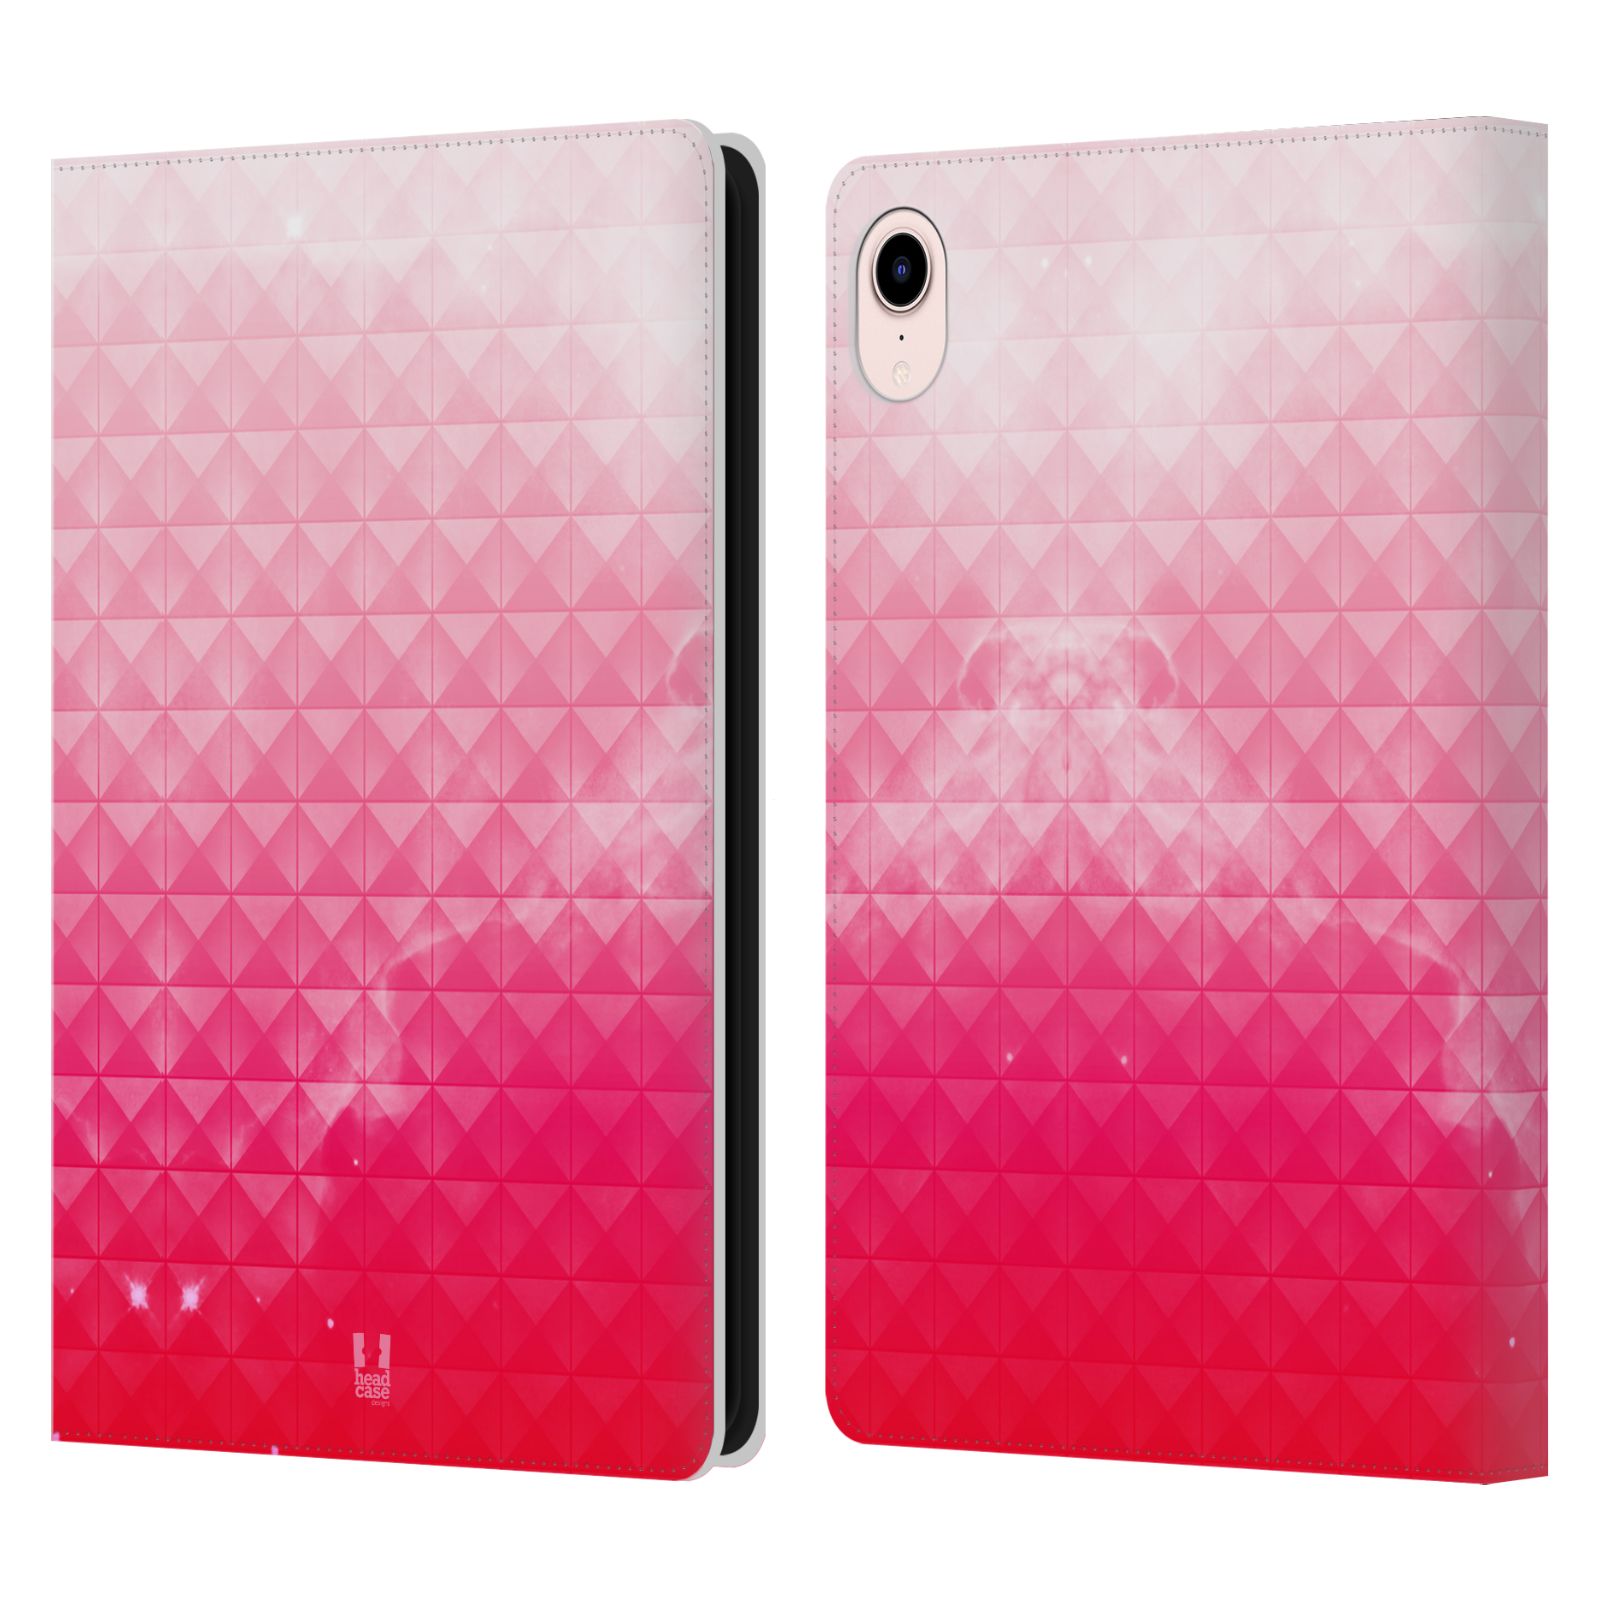 Pouzdro pro tablet Apple Ipad MINI (2021) - HEAD CASE - barevná vesmírná mlhovina růžová jahoda